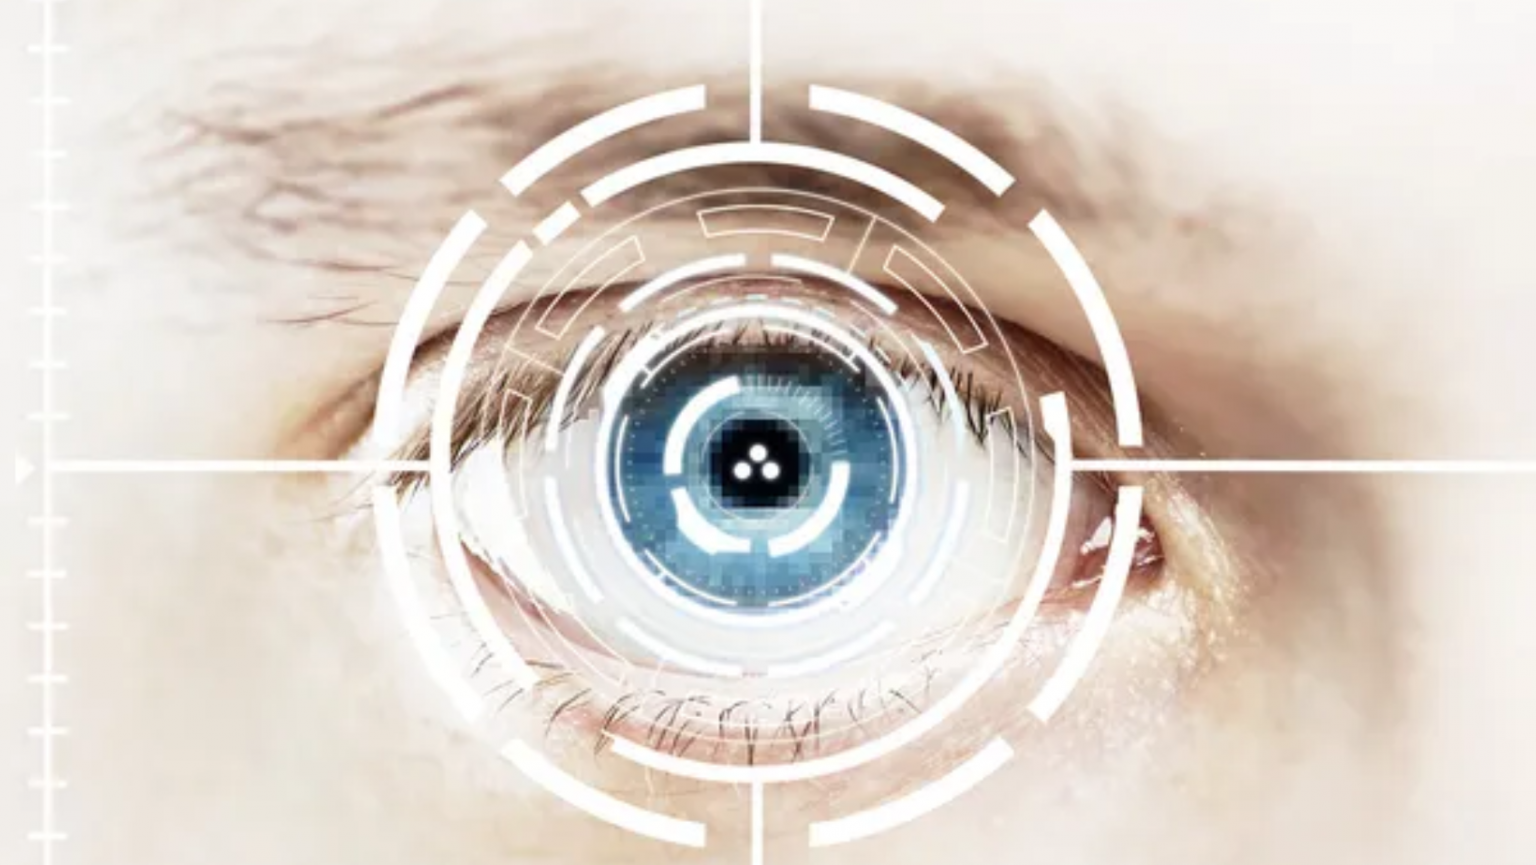 Фокусировка глаза человека. Сетчатка глаза биометрия. Биометрия Радужки глаза. Идентификация по радужной оболочке глаза. Сканер сетчатки глаза.